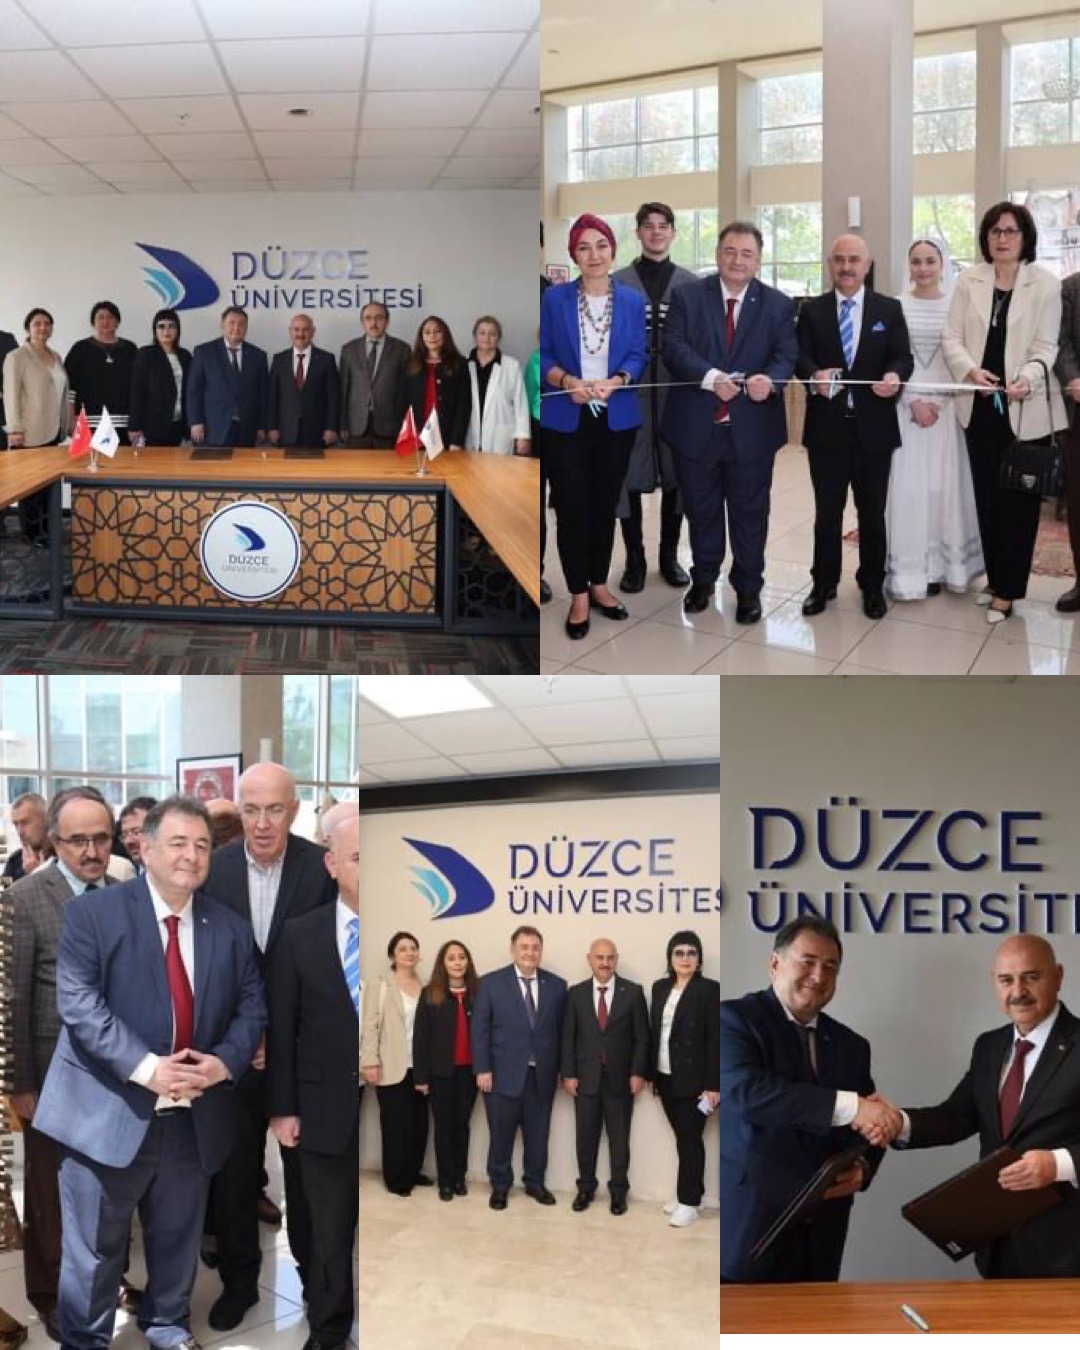 Düzce Üniversitesi Çerkes Dili ve Kültürü Bölümü 10. Yılını Kutladı